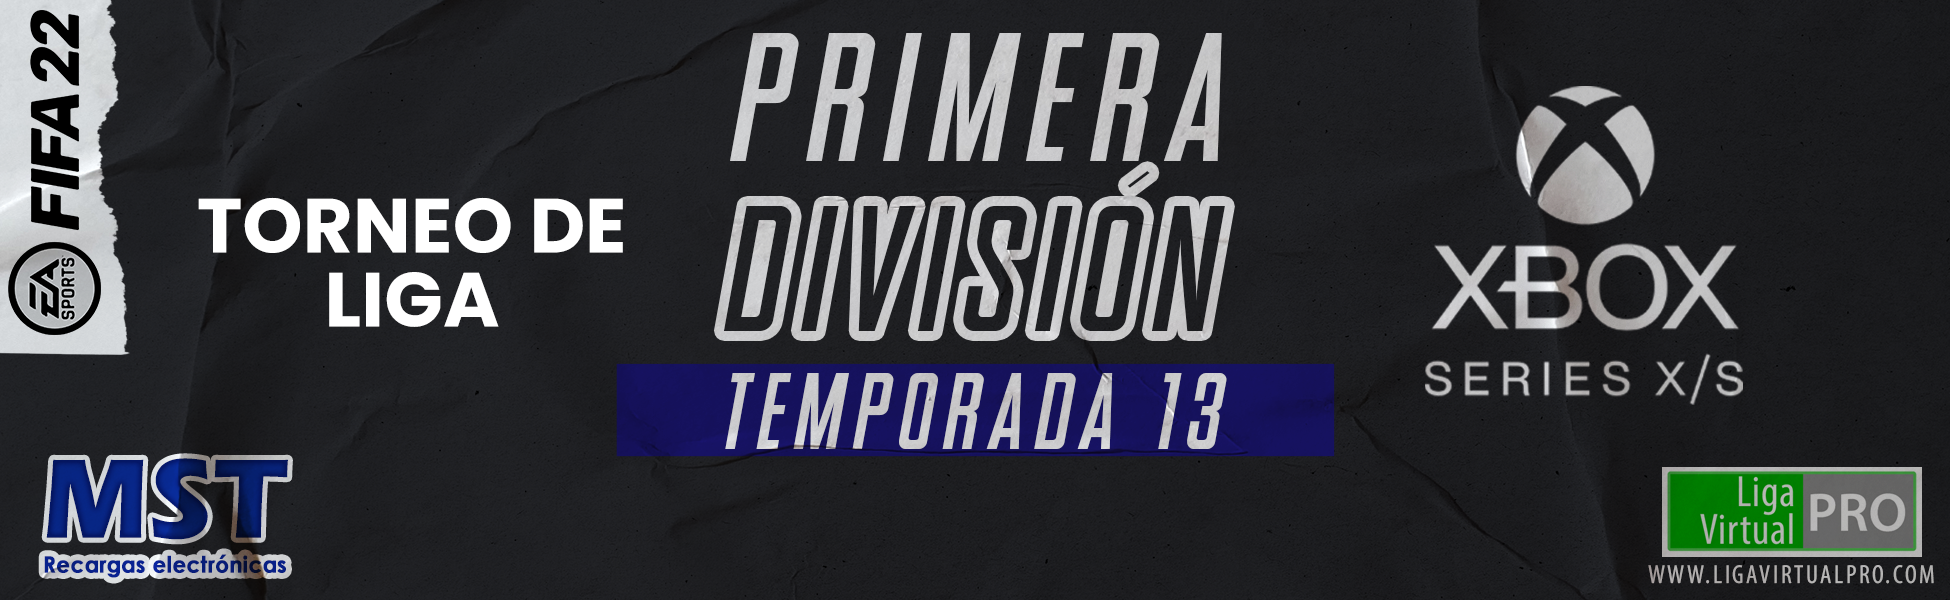 Logo-PRIMERA DIVISIÓN XBOX SERIES - TEMPORADA 13